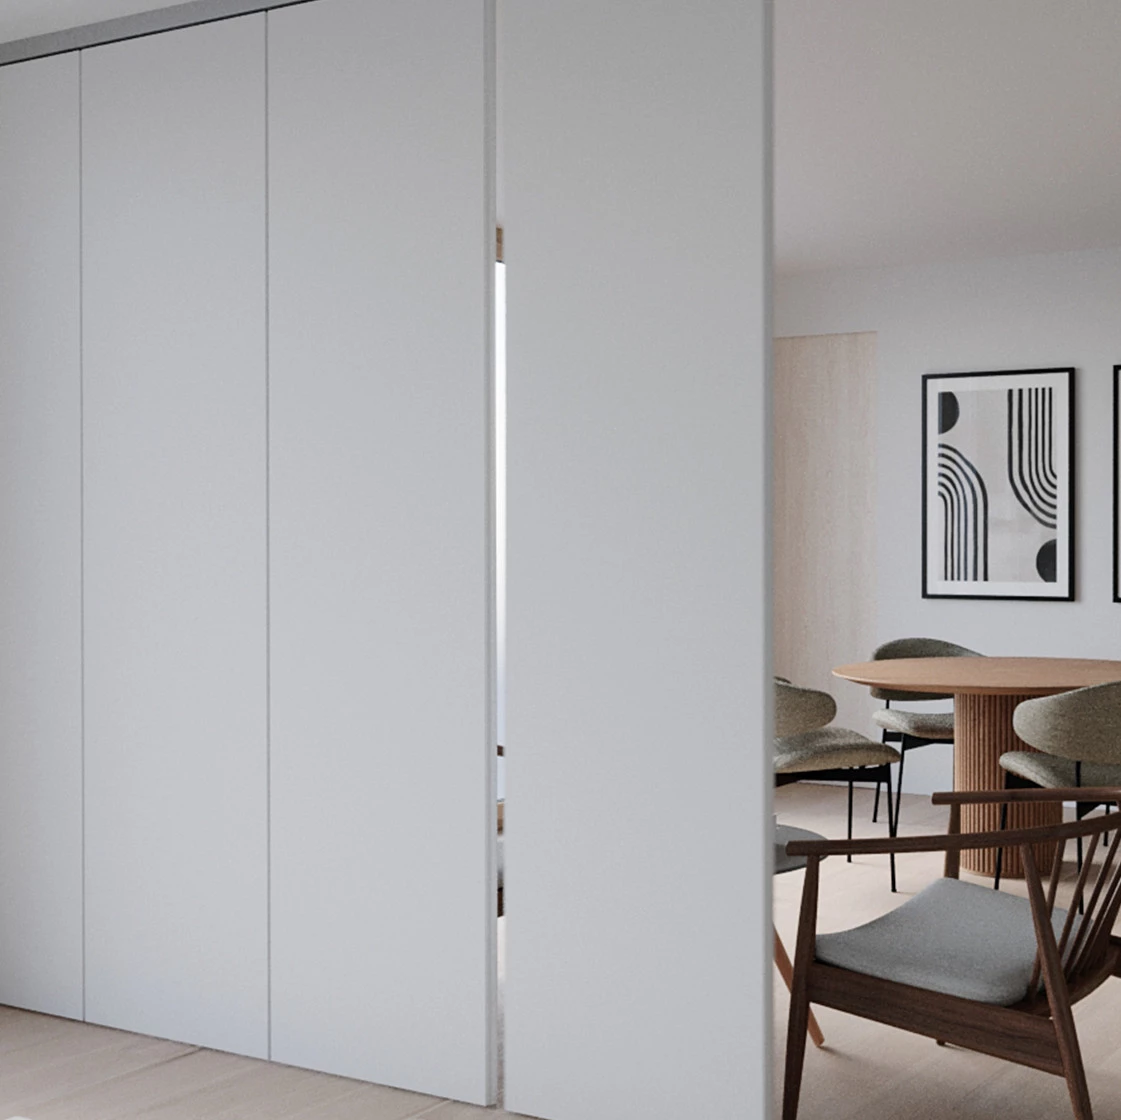 Hawa specialist sliding door hinges, pocket door hinges, sliding door runners, UK. Modern white wardrobe door hinge design